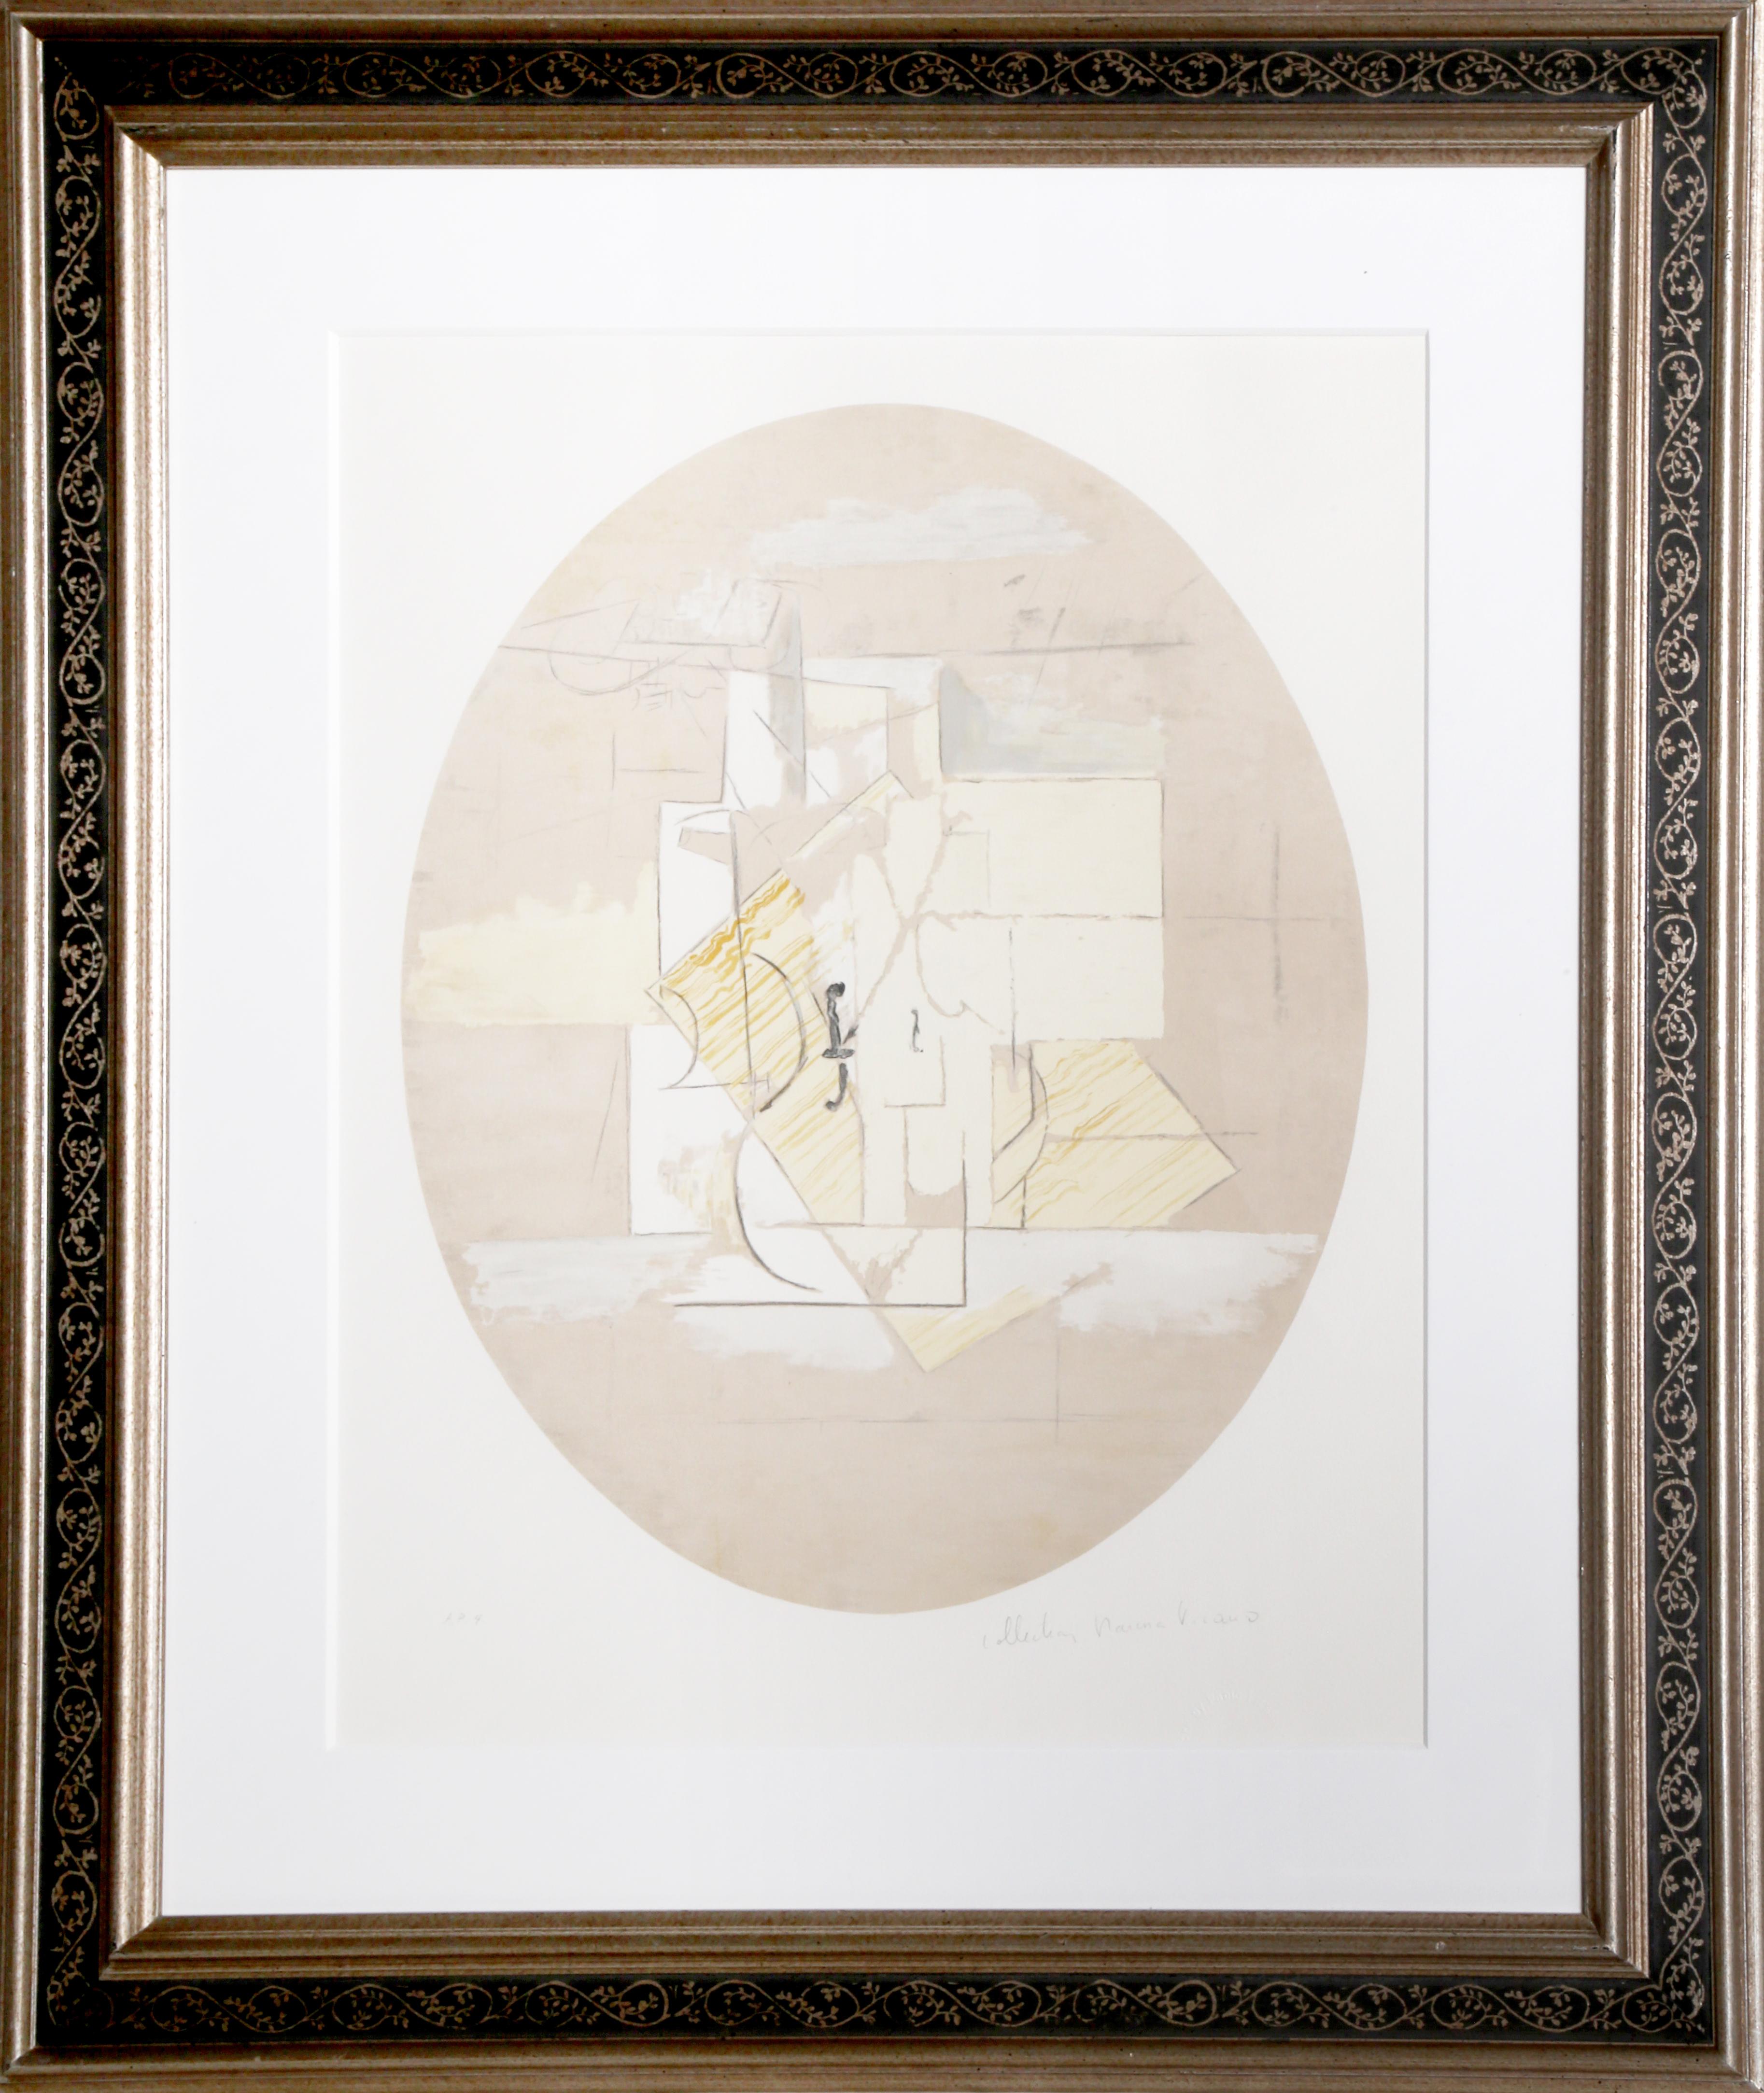 Lithographie de la Collection Salsa de Marina Picasso d'après le tableau "Violon" de Pablo Picasso.  La peinture originale a été achevée en 1912. Dans les années 1970, après la mort de Picasso, Marina Picasso, sa petite-fille, a autorisé la création